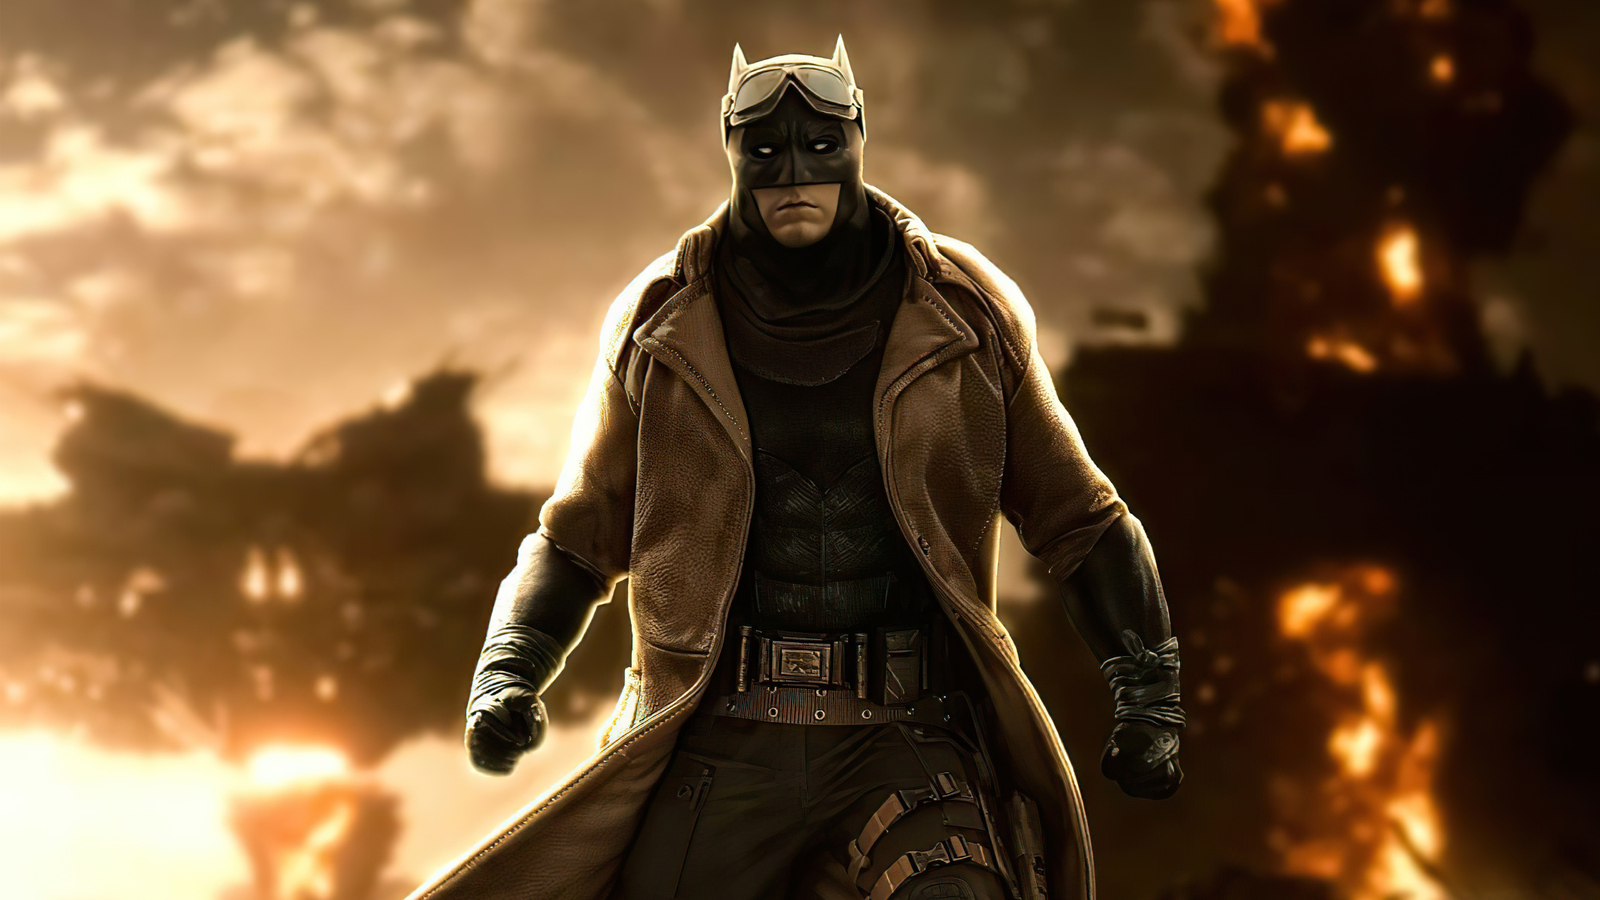 Nexus batman. Бэтмен Knightmare. Batfleck Wallpaper. Knightmare Snyder.